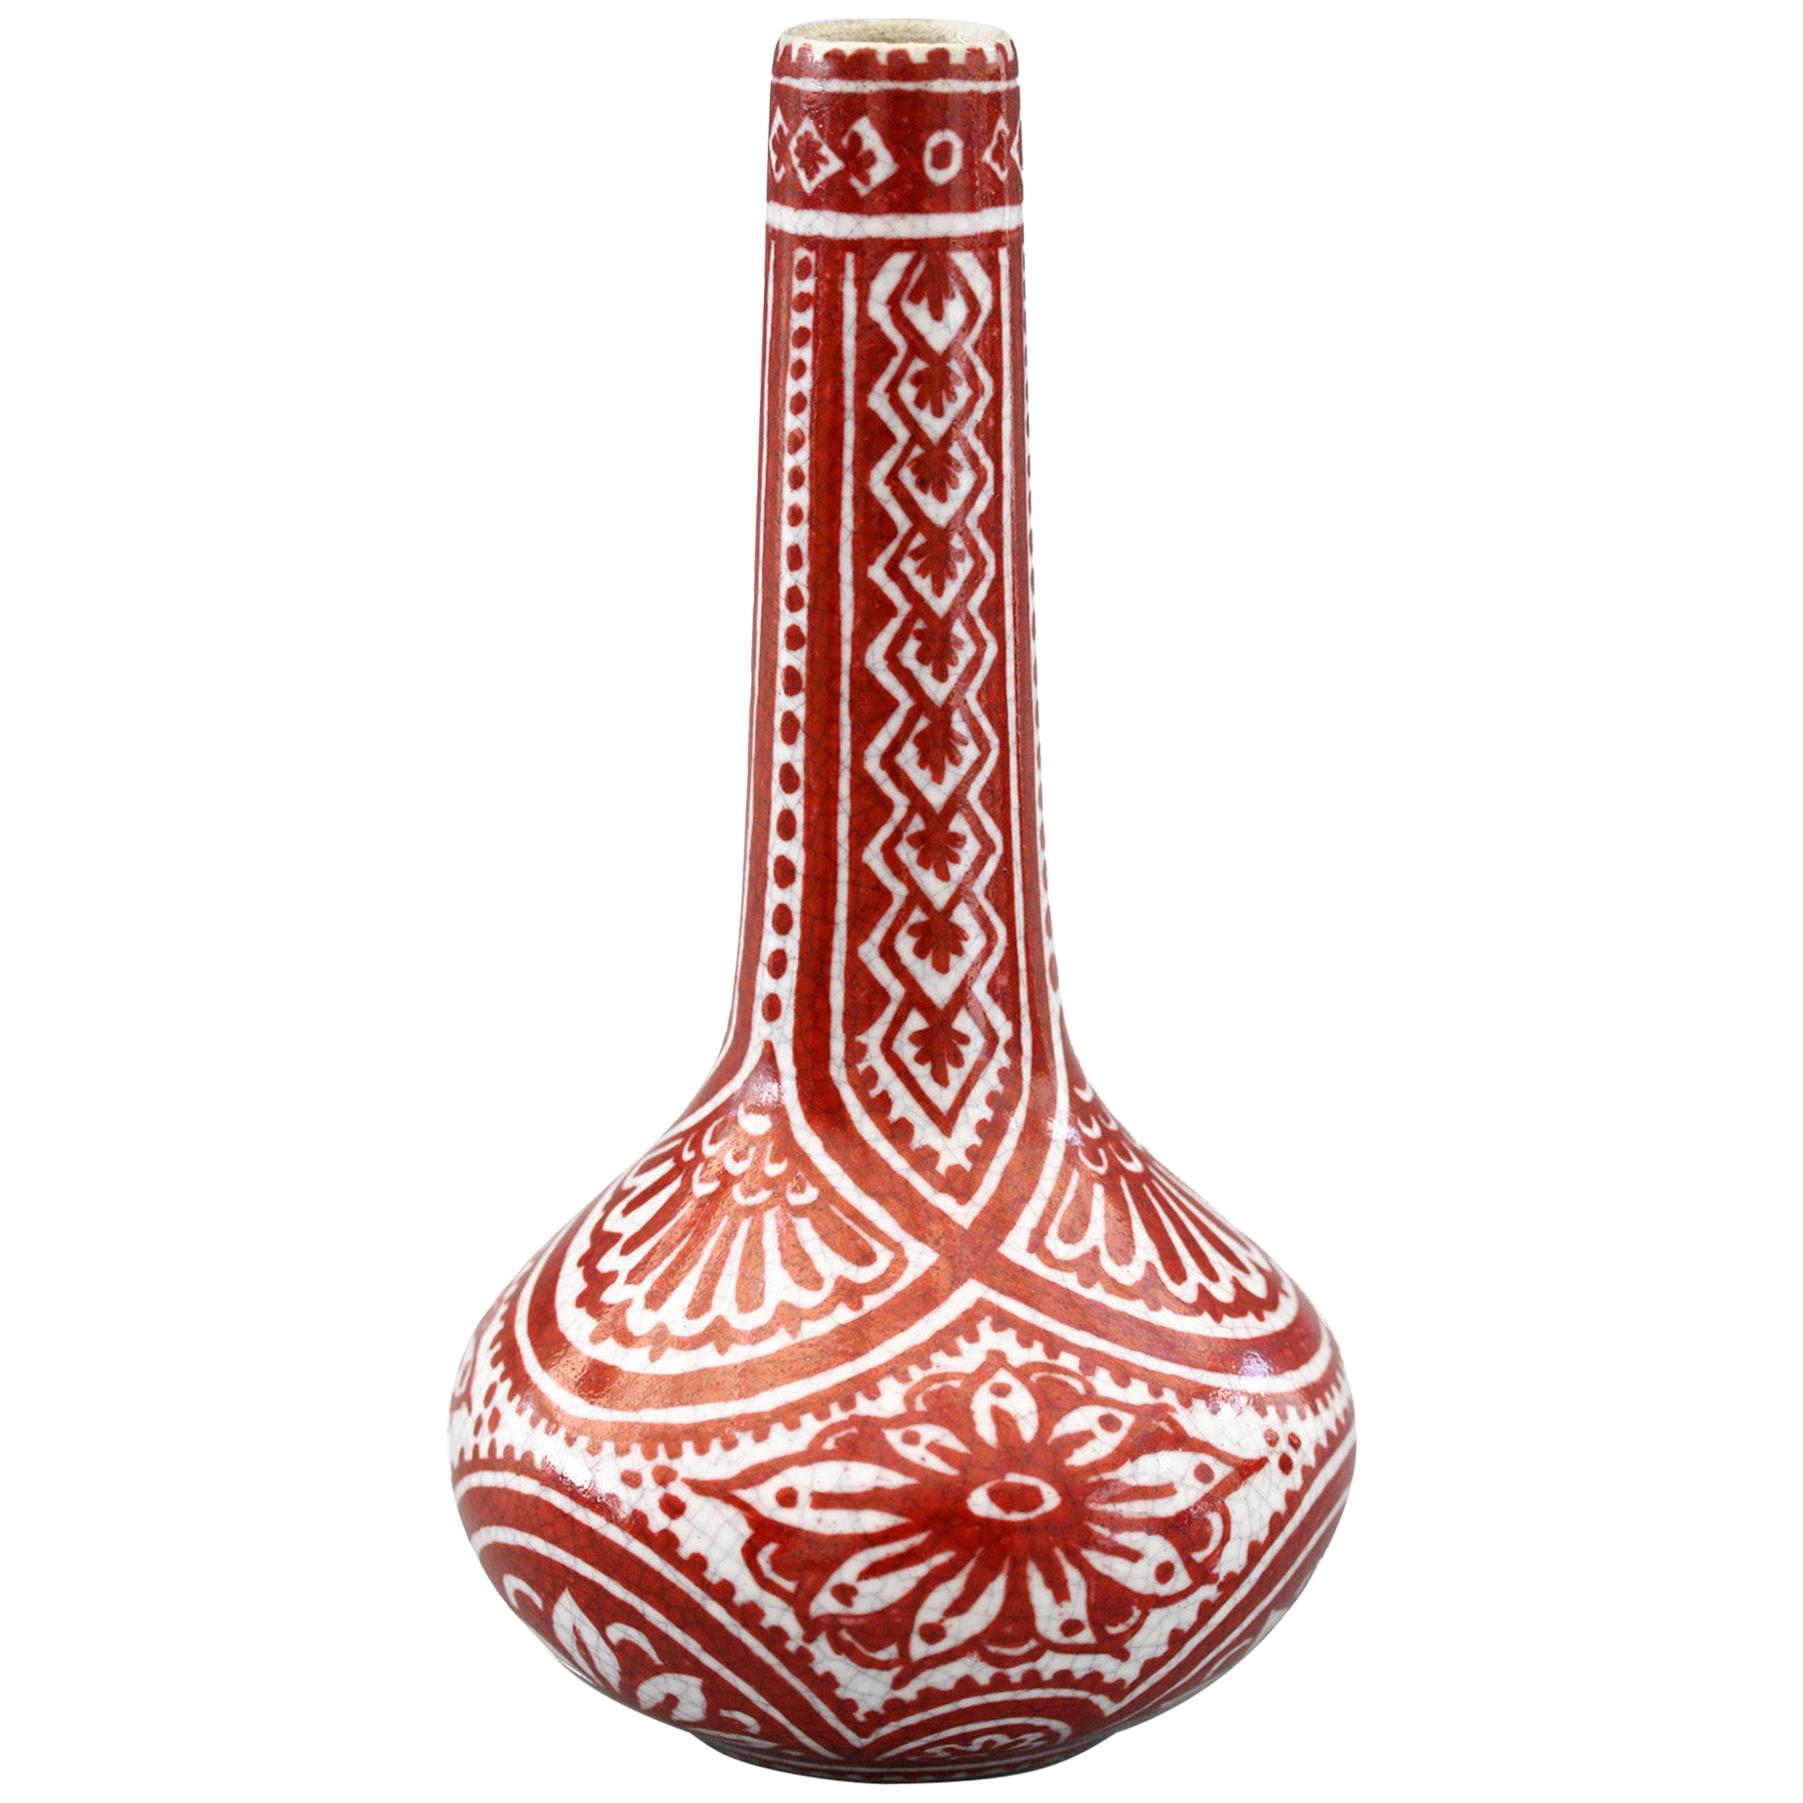 De Porcelyne Fles Dutch Delft Red Craquele Glaze Pottery Vase